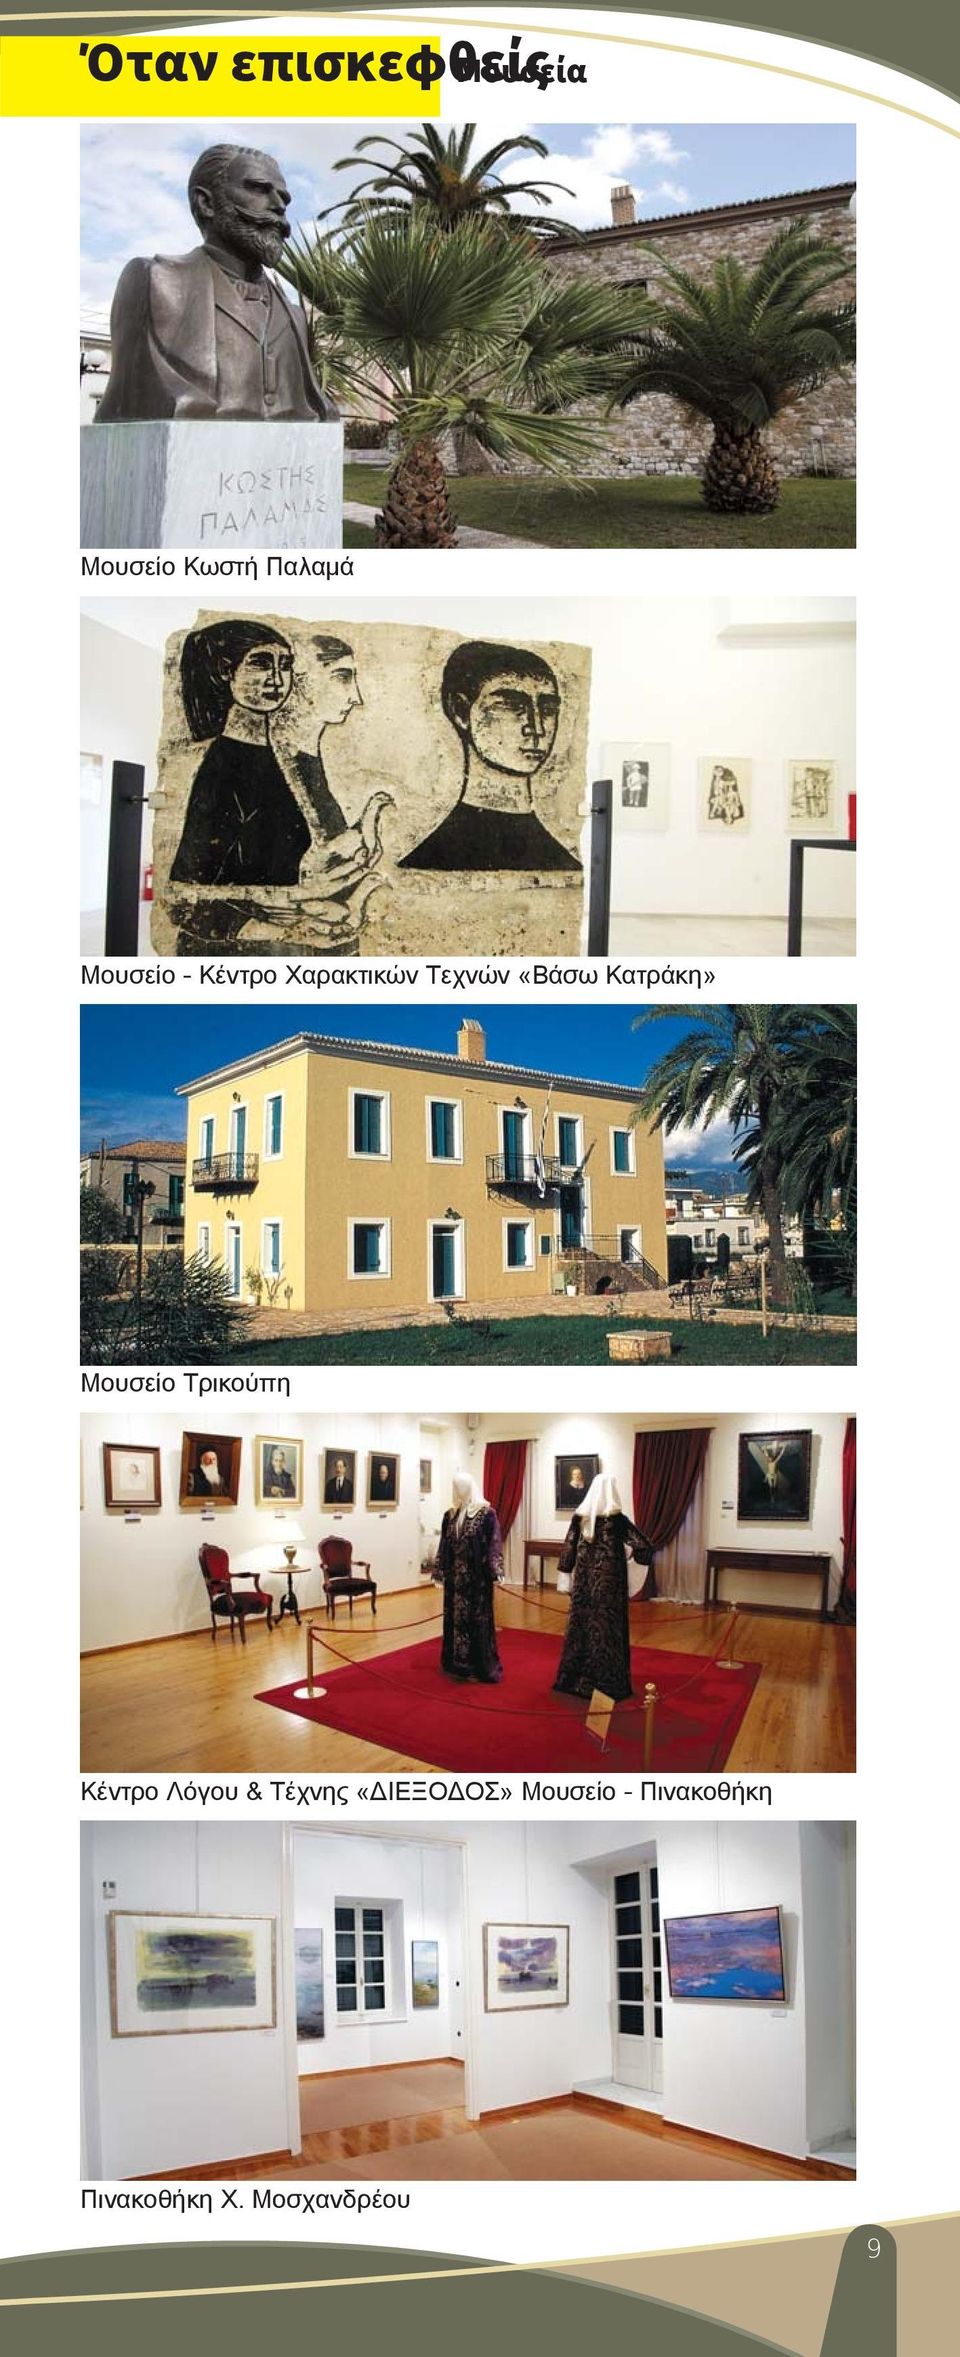 Κατράκη» Mουσείο Τρικούπη Κέντρο Λόγου & Τέχνης